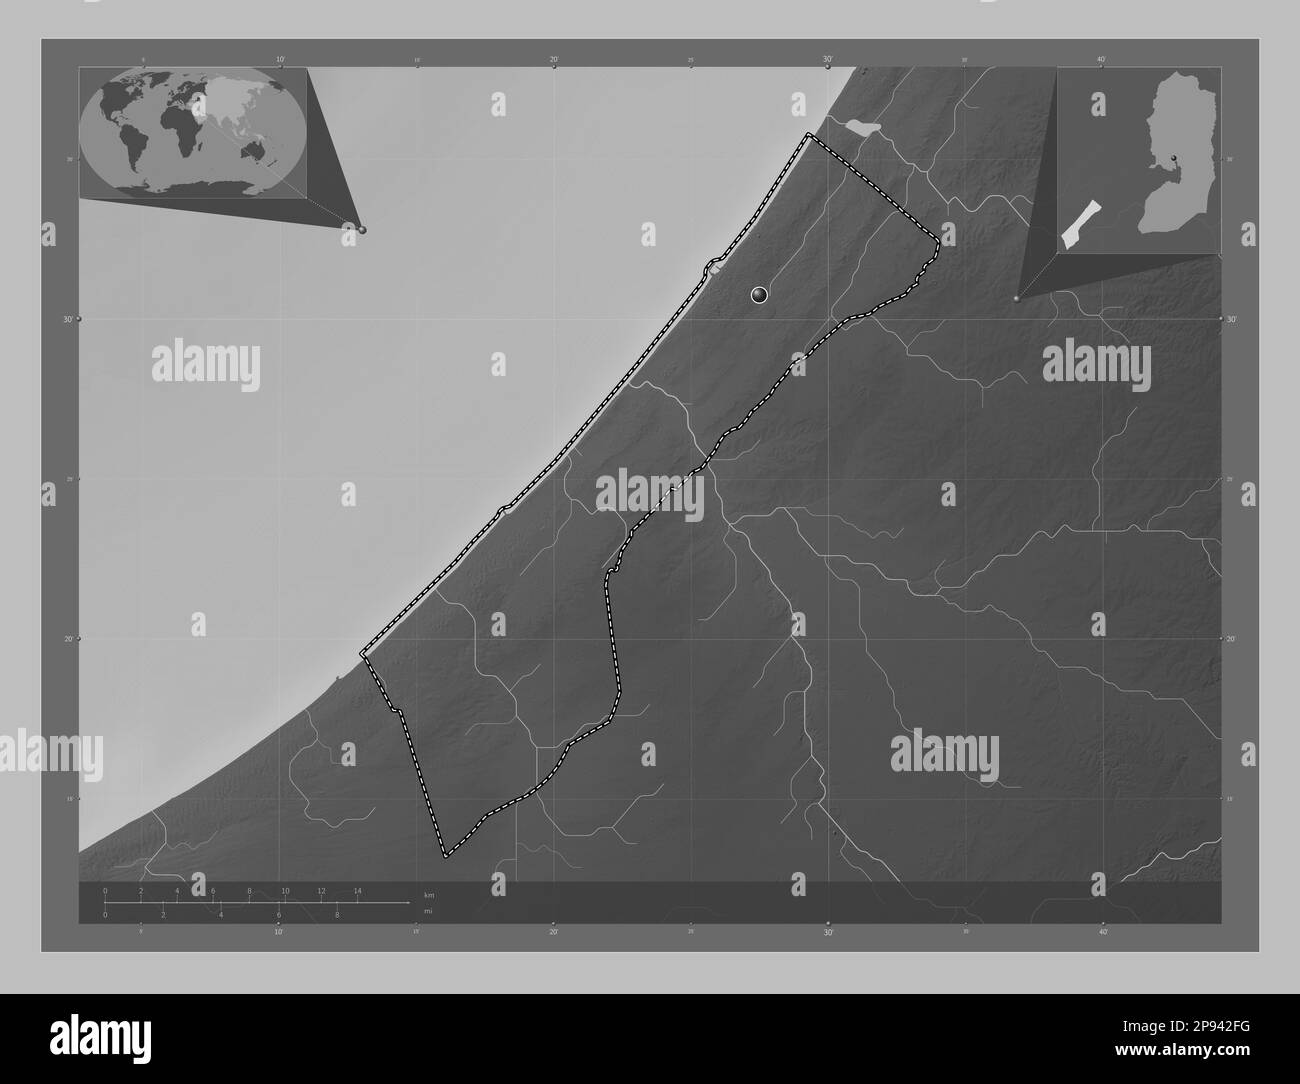 Striscia di Gaza, regione della Palestina. Mappa in scala di grigi con laghi e fiumi. Mappe delle posizioni ausiliarie degli angoli Foto Stock